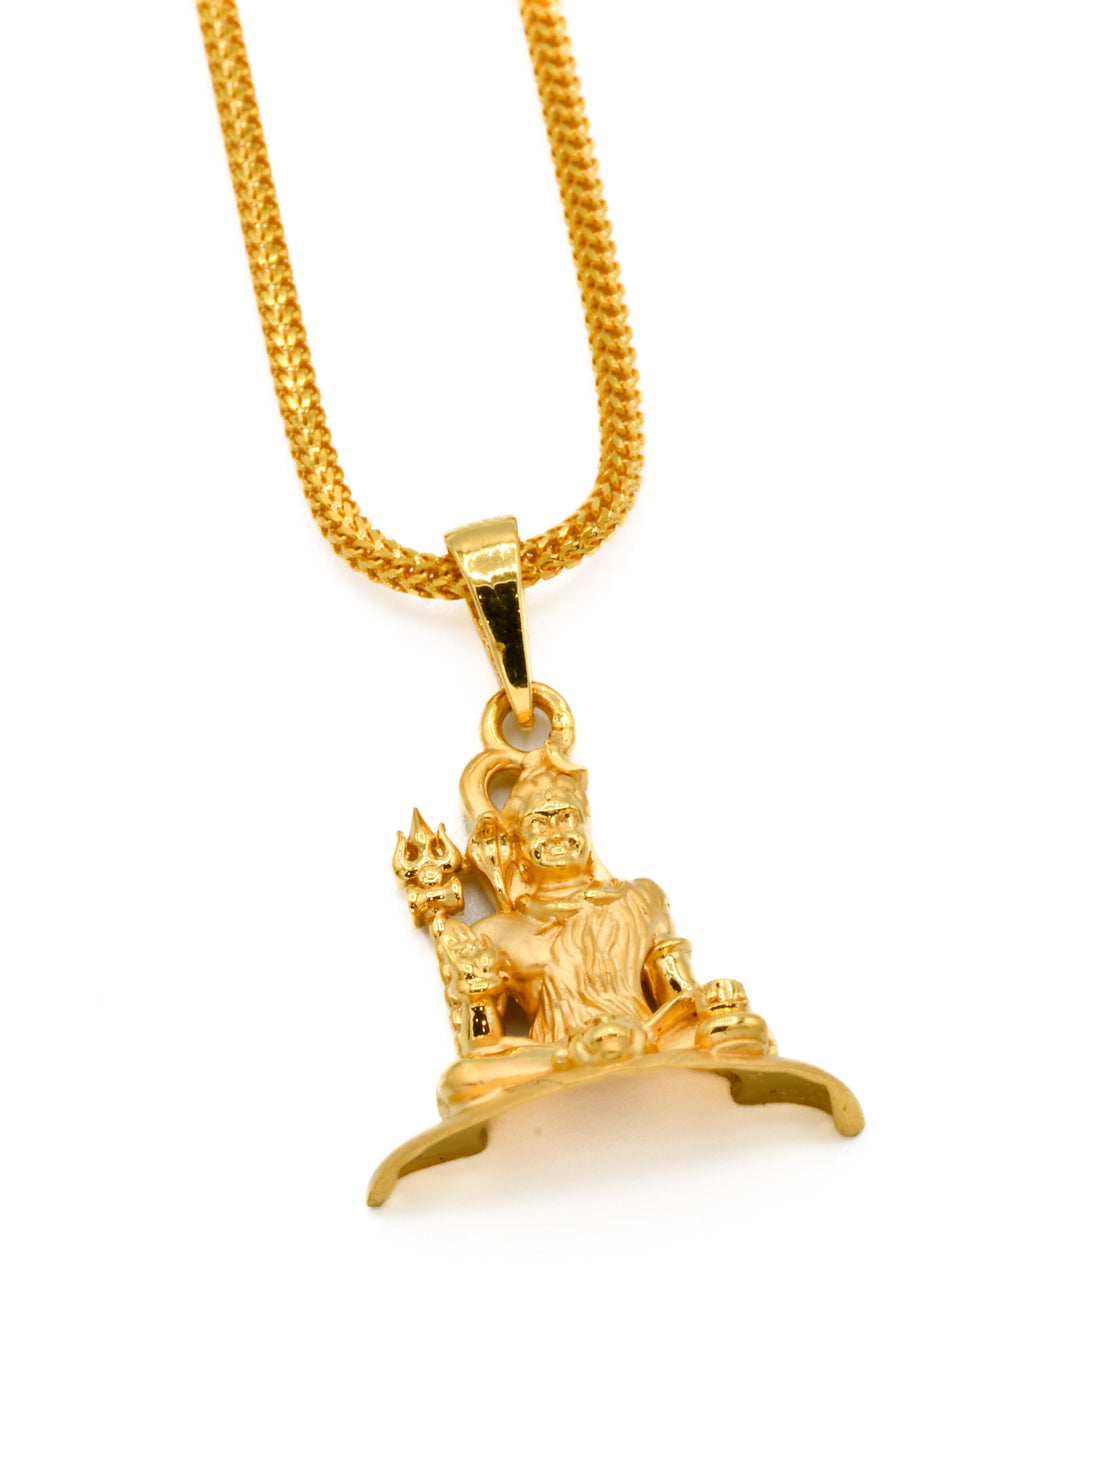 22ct Gold Shivji Pendant - Roop Darshan